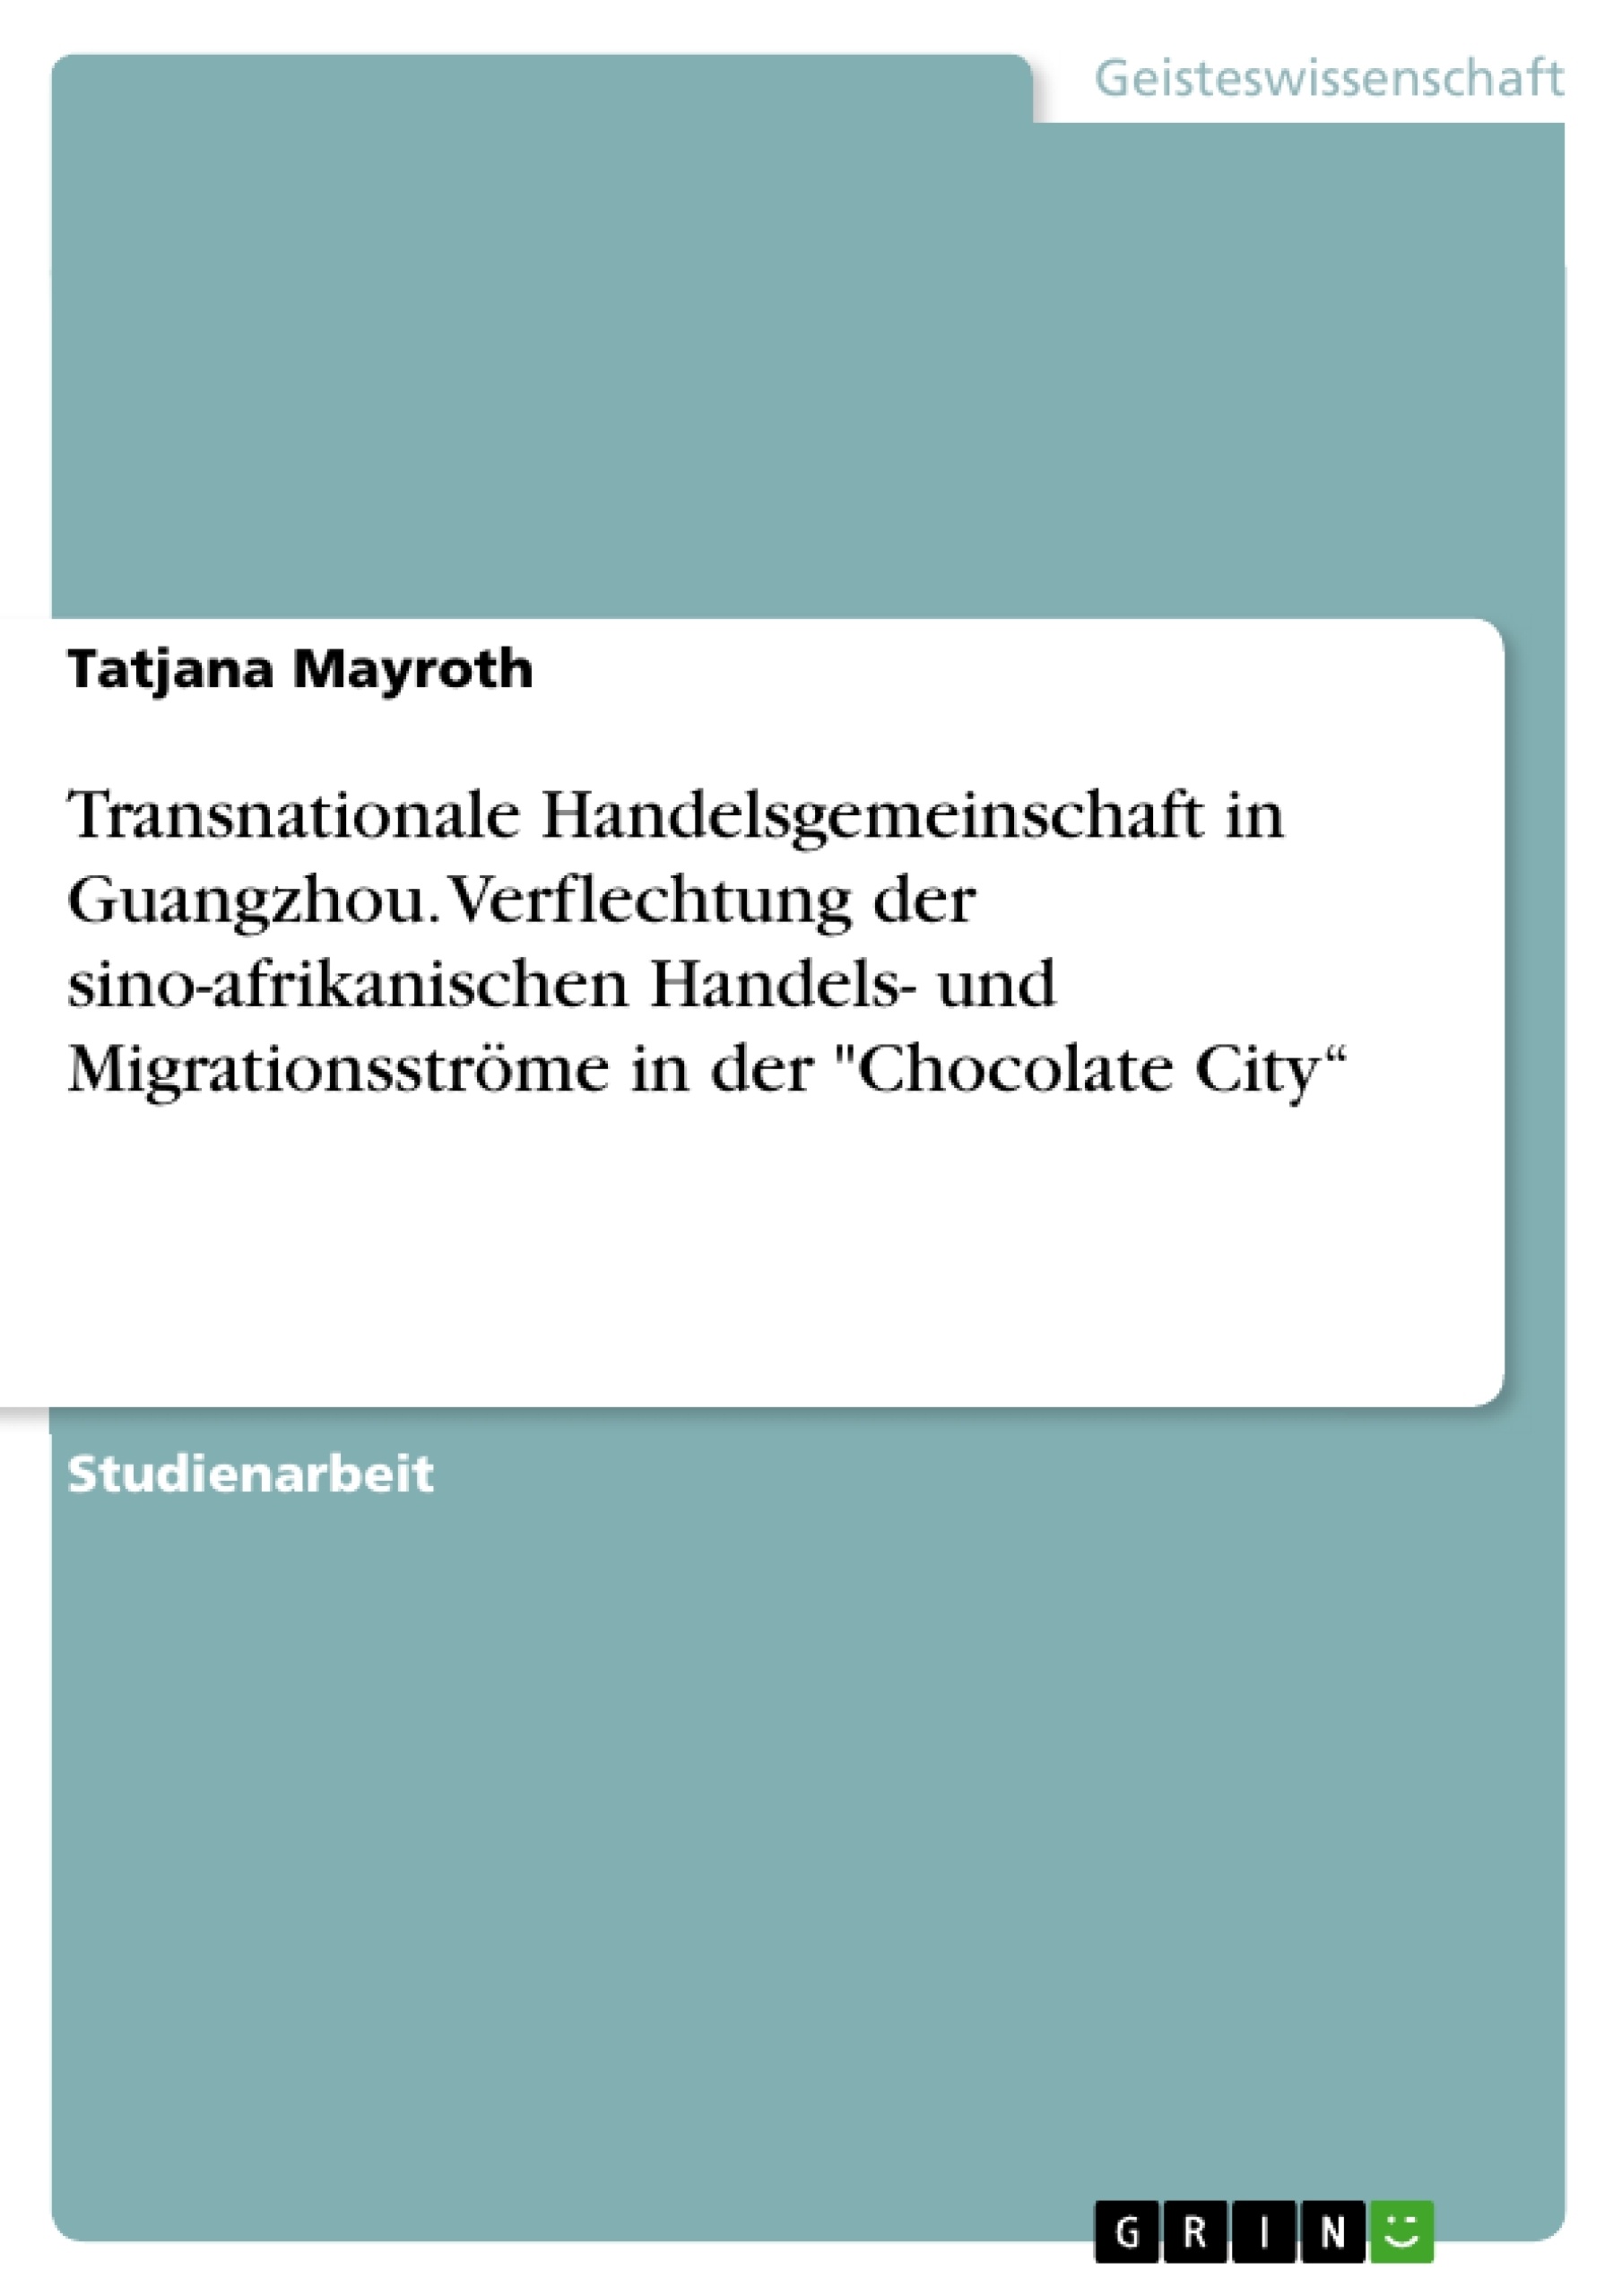 Titel: Transnationale Handelsgemeinschaft in Guangzhou. Verflechtung der sino-afrikanischen Handels- und Migrationsströme in der "Chocolate City“